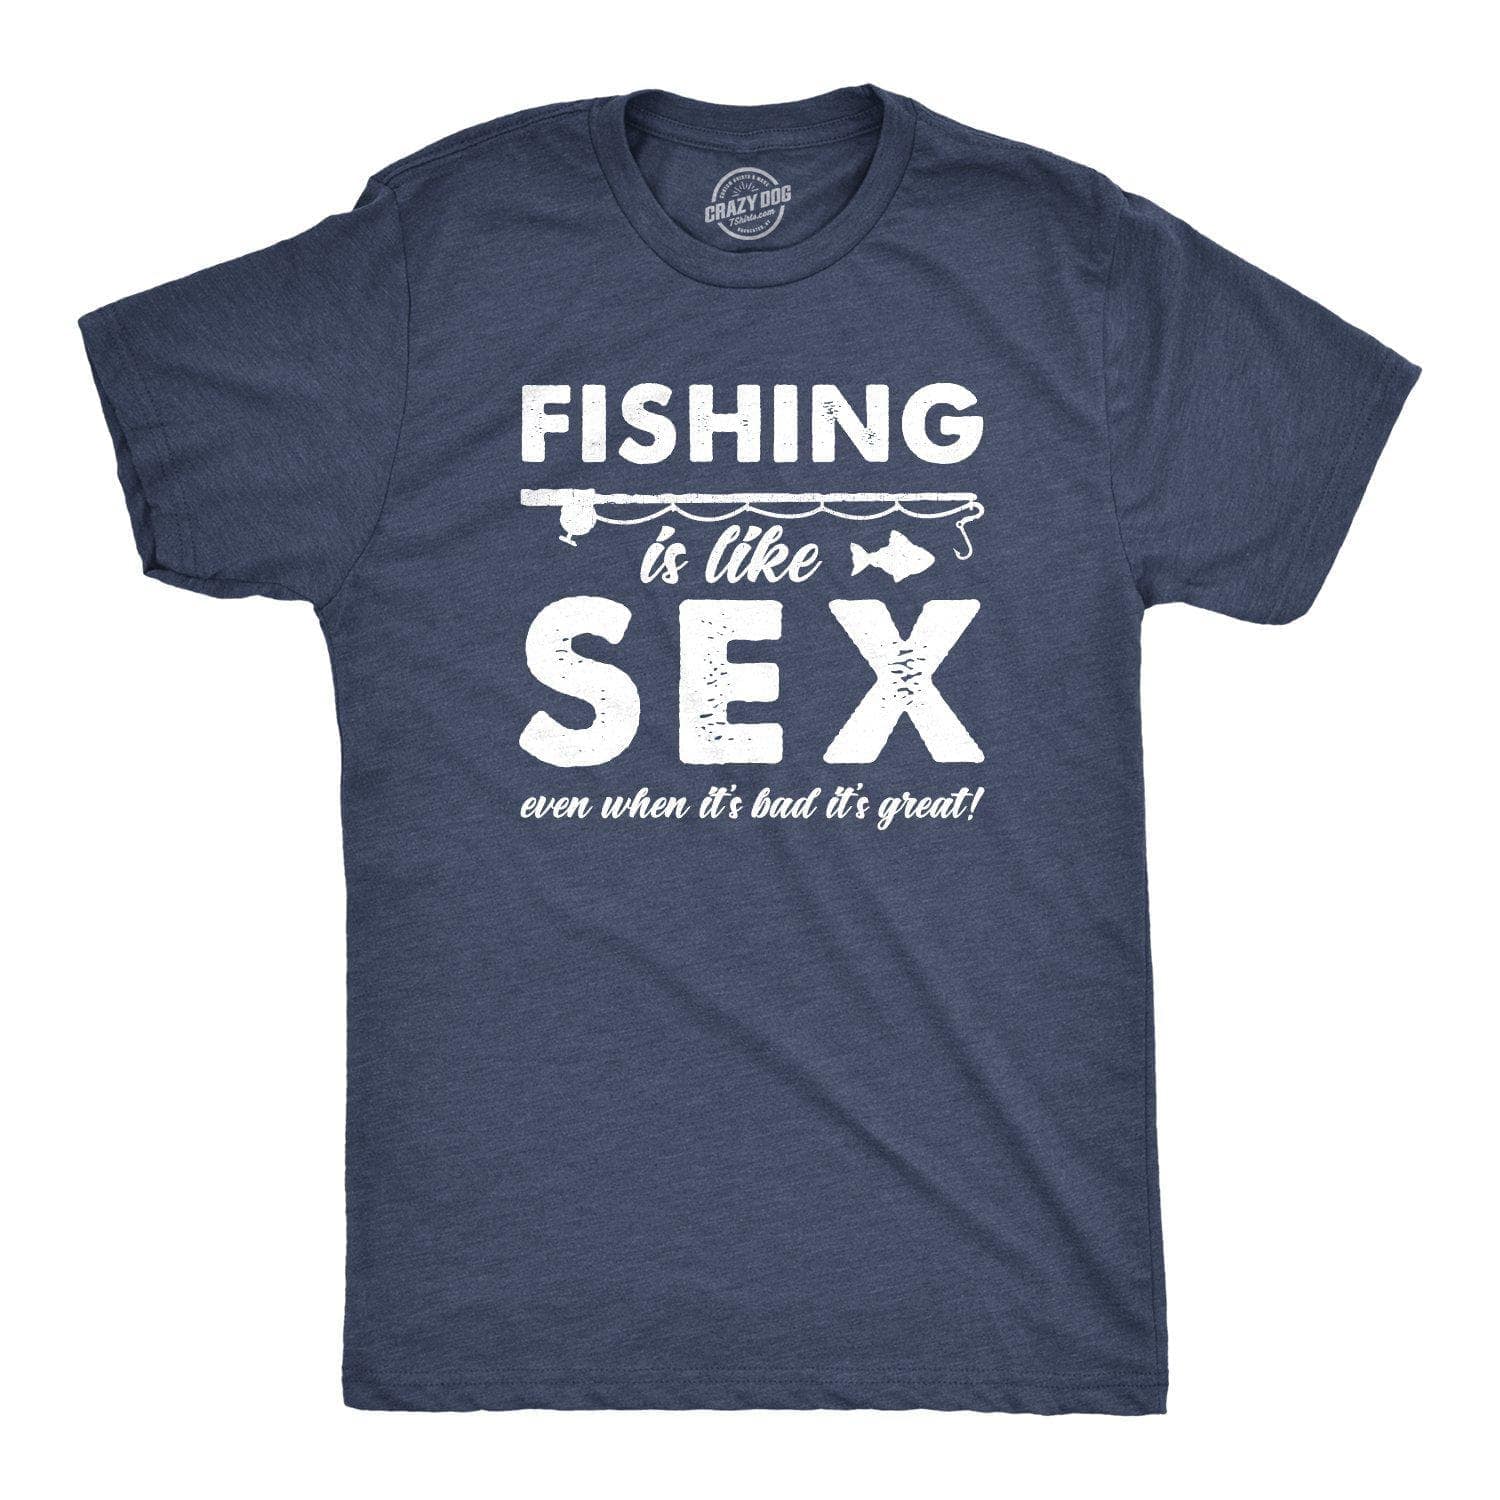 https://cdn.shopify.com/s/files/1/2959/1448/products/crazy-dog-t-shirts-mens-t-shirts-fishing-is-like-sex-men-s-tshirt-28140405555315_1600x.jpg?v=1633627862